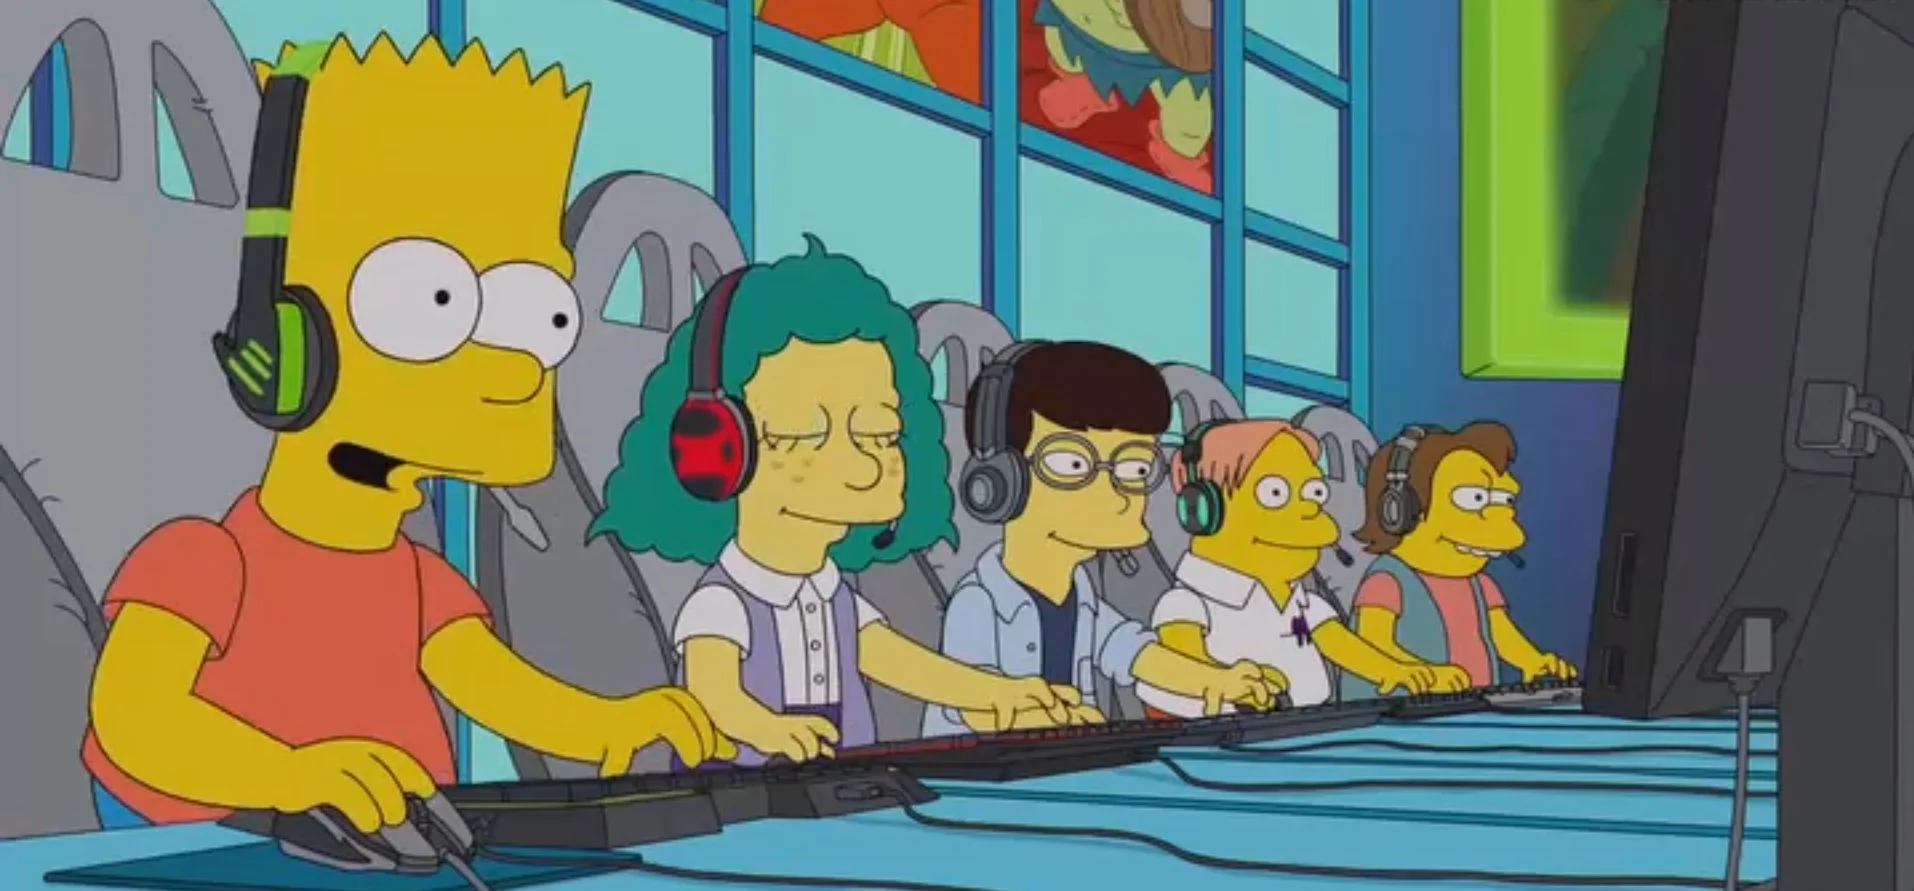 Герои «Симпсонов» окунулись в киберспорт. Получилось достаточно правдоподобно - фото 3